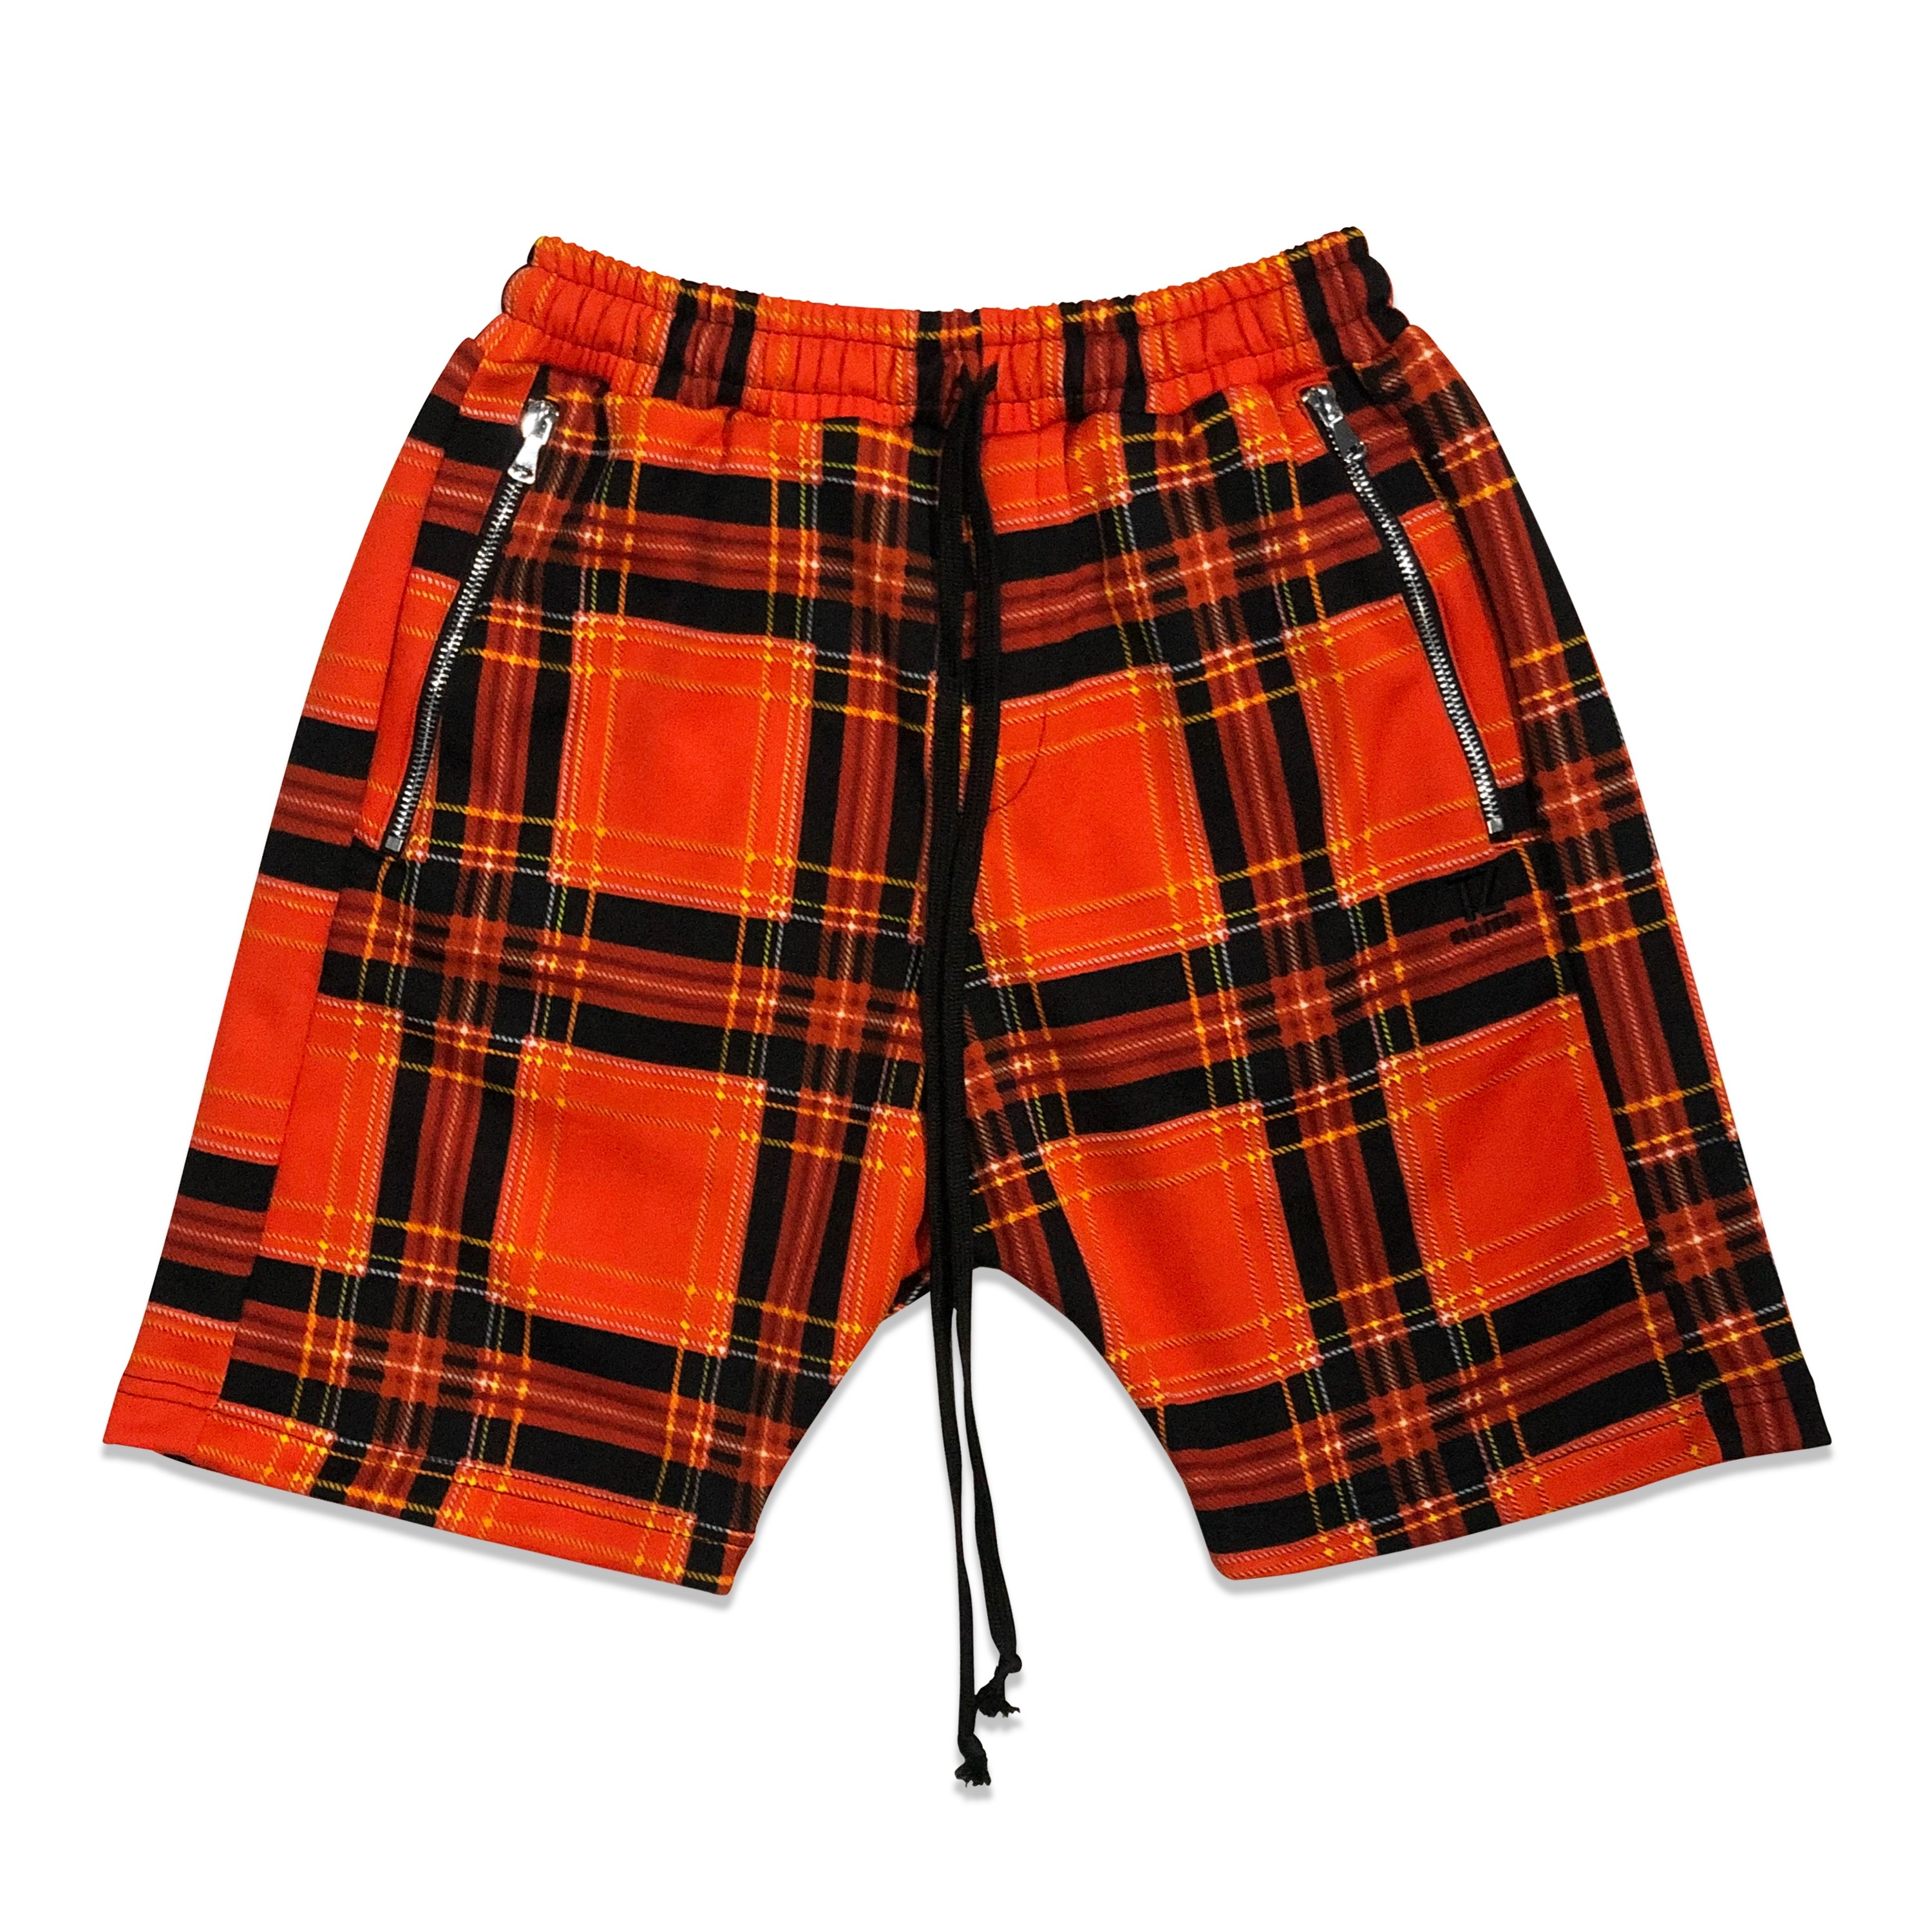 TZ Plaid Shorts Pants - Orange Size M